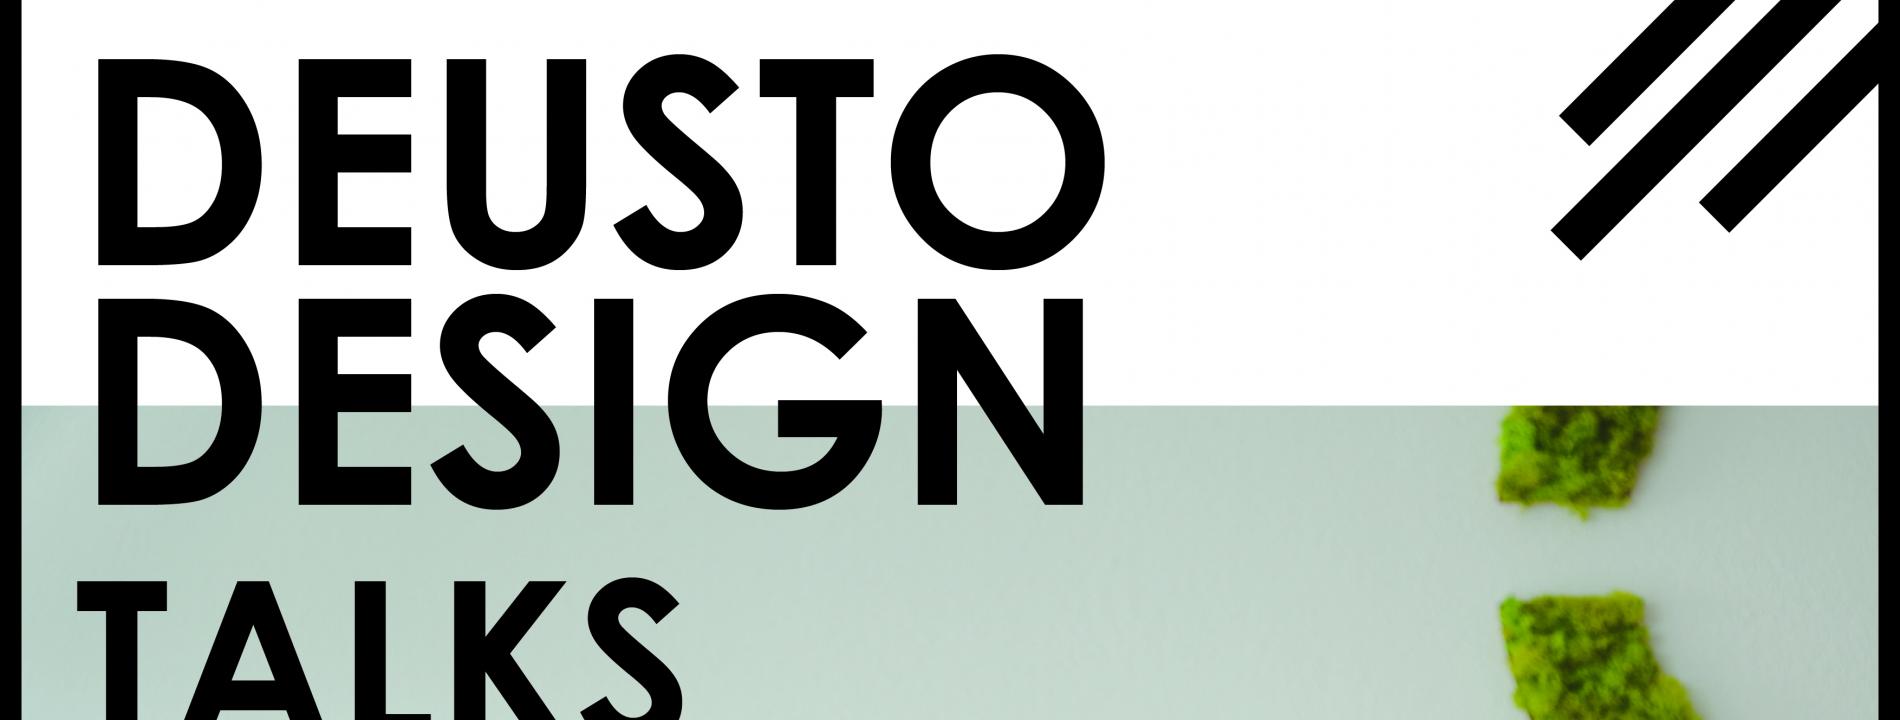 Deusto Design Talks